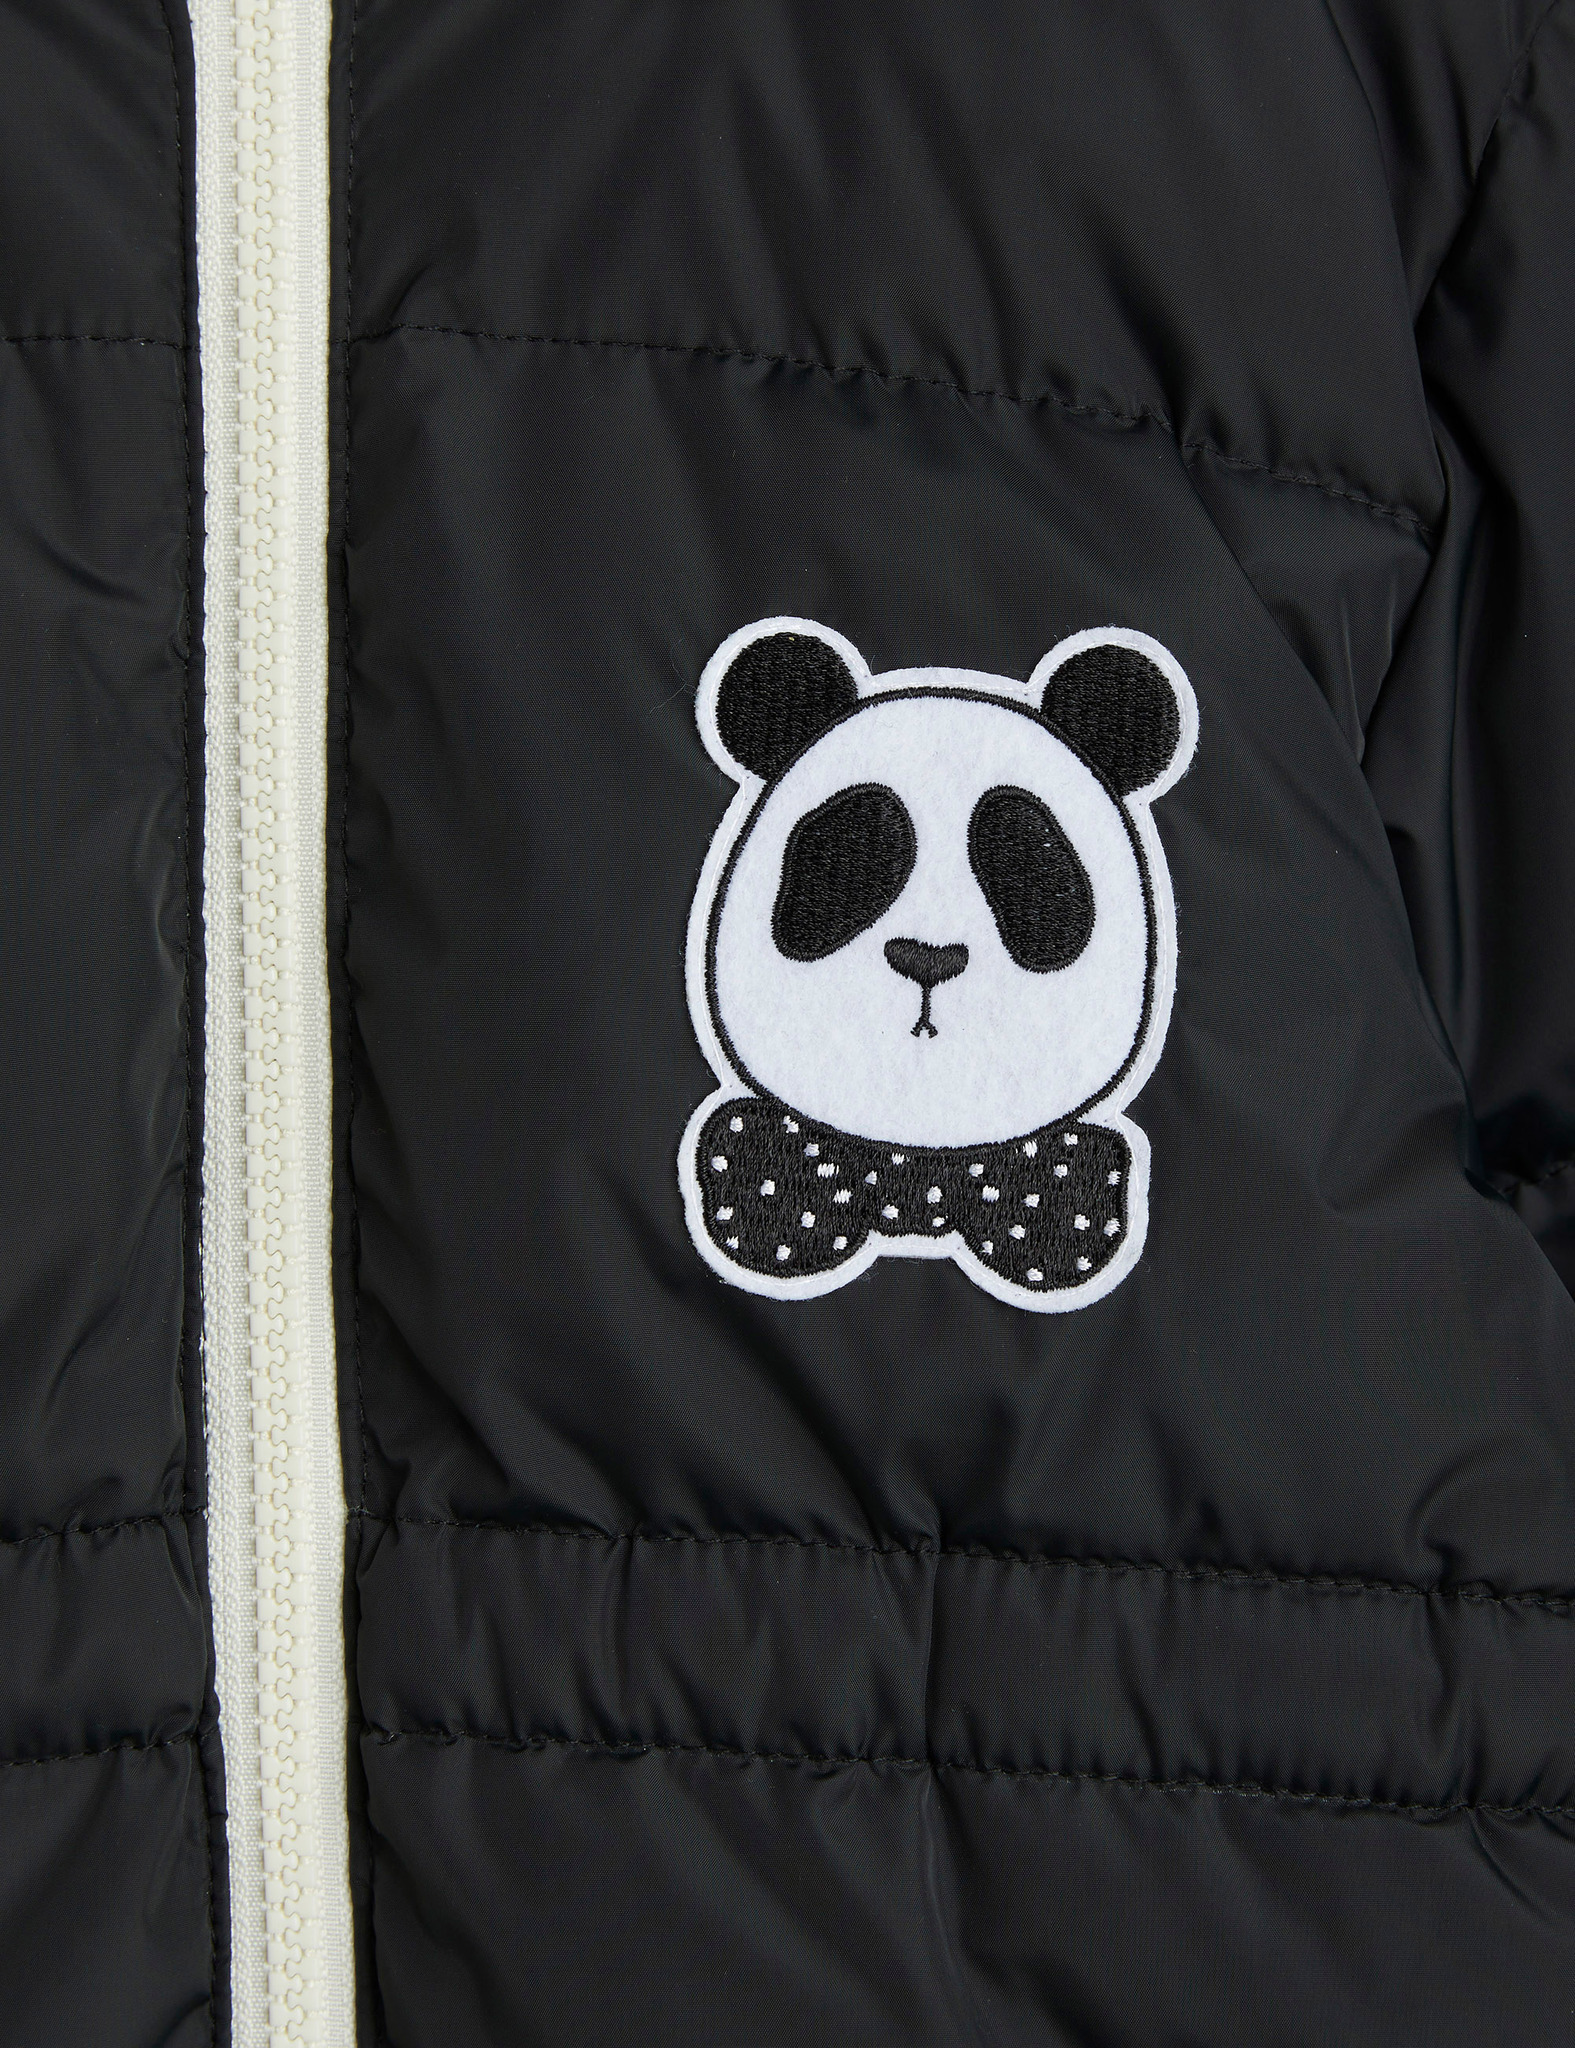 Mini Rodini Panda hooded puffer jacket Chapter 2